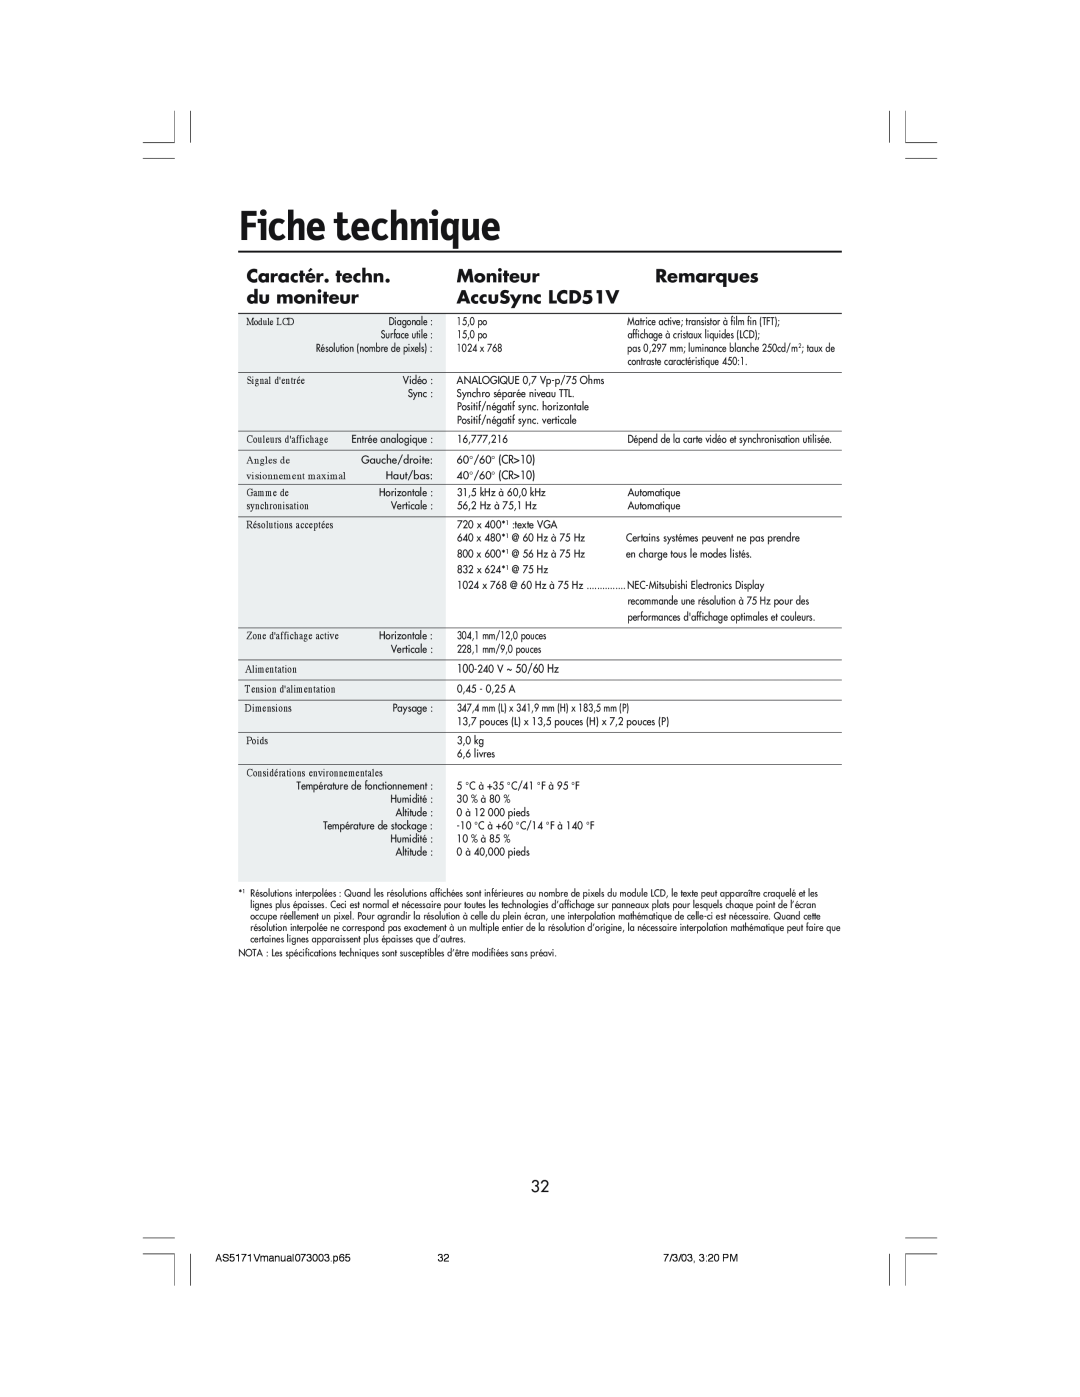 NEC LCD71V manual Fiche technique, Caractér. techn, Moniteur, Remarques, du moniteur, AccuSync LCD51V 